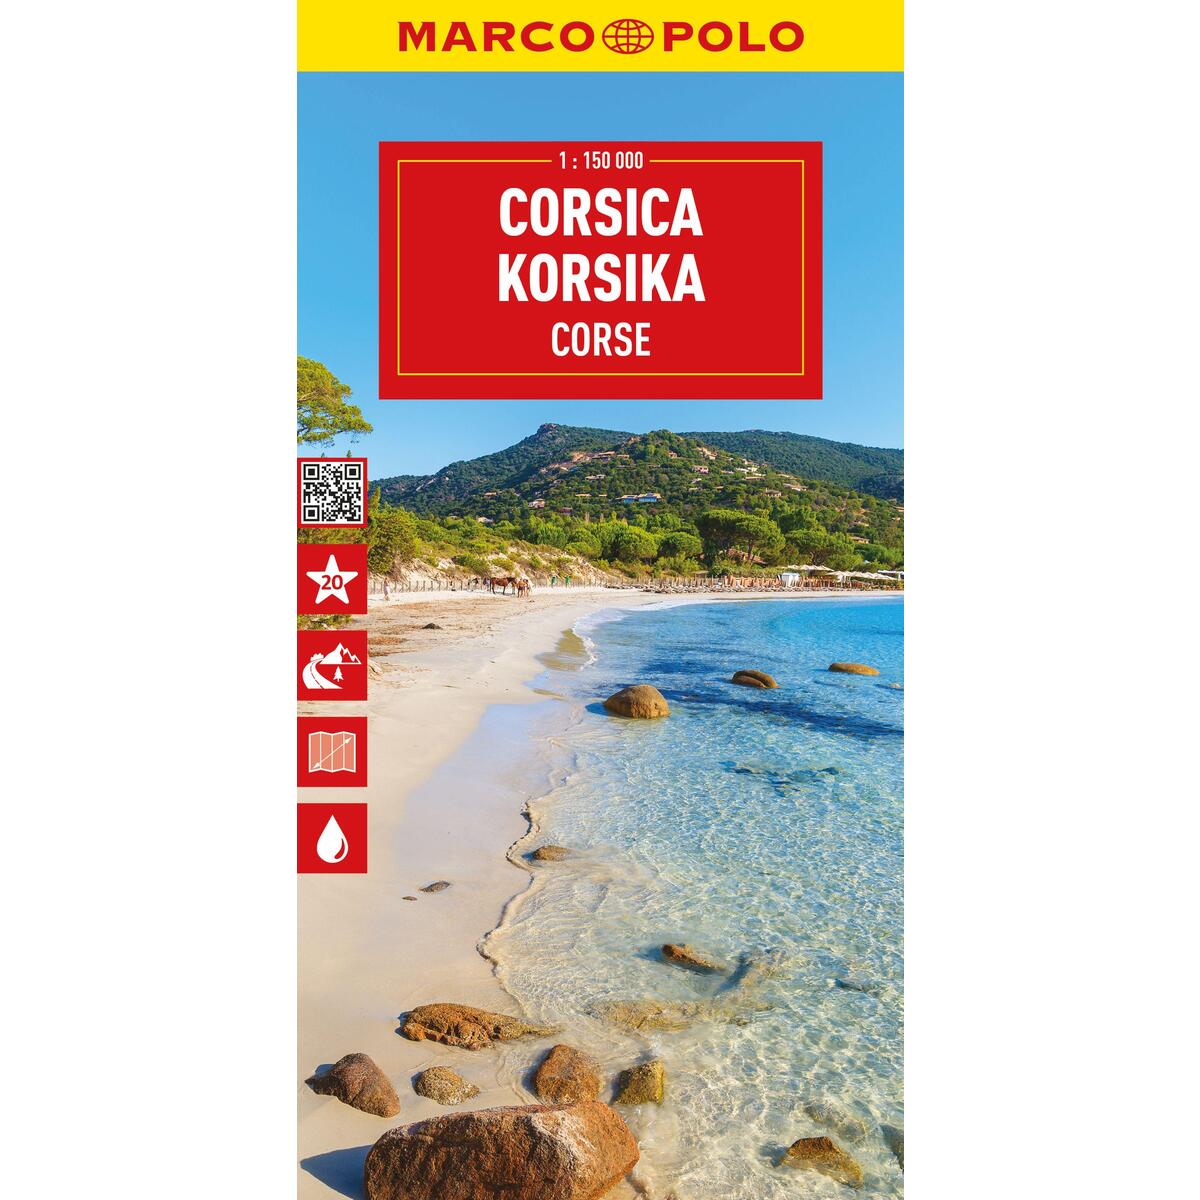 MARCO POLO Reisekarte Korsika 1:150.000 von Mairdumont